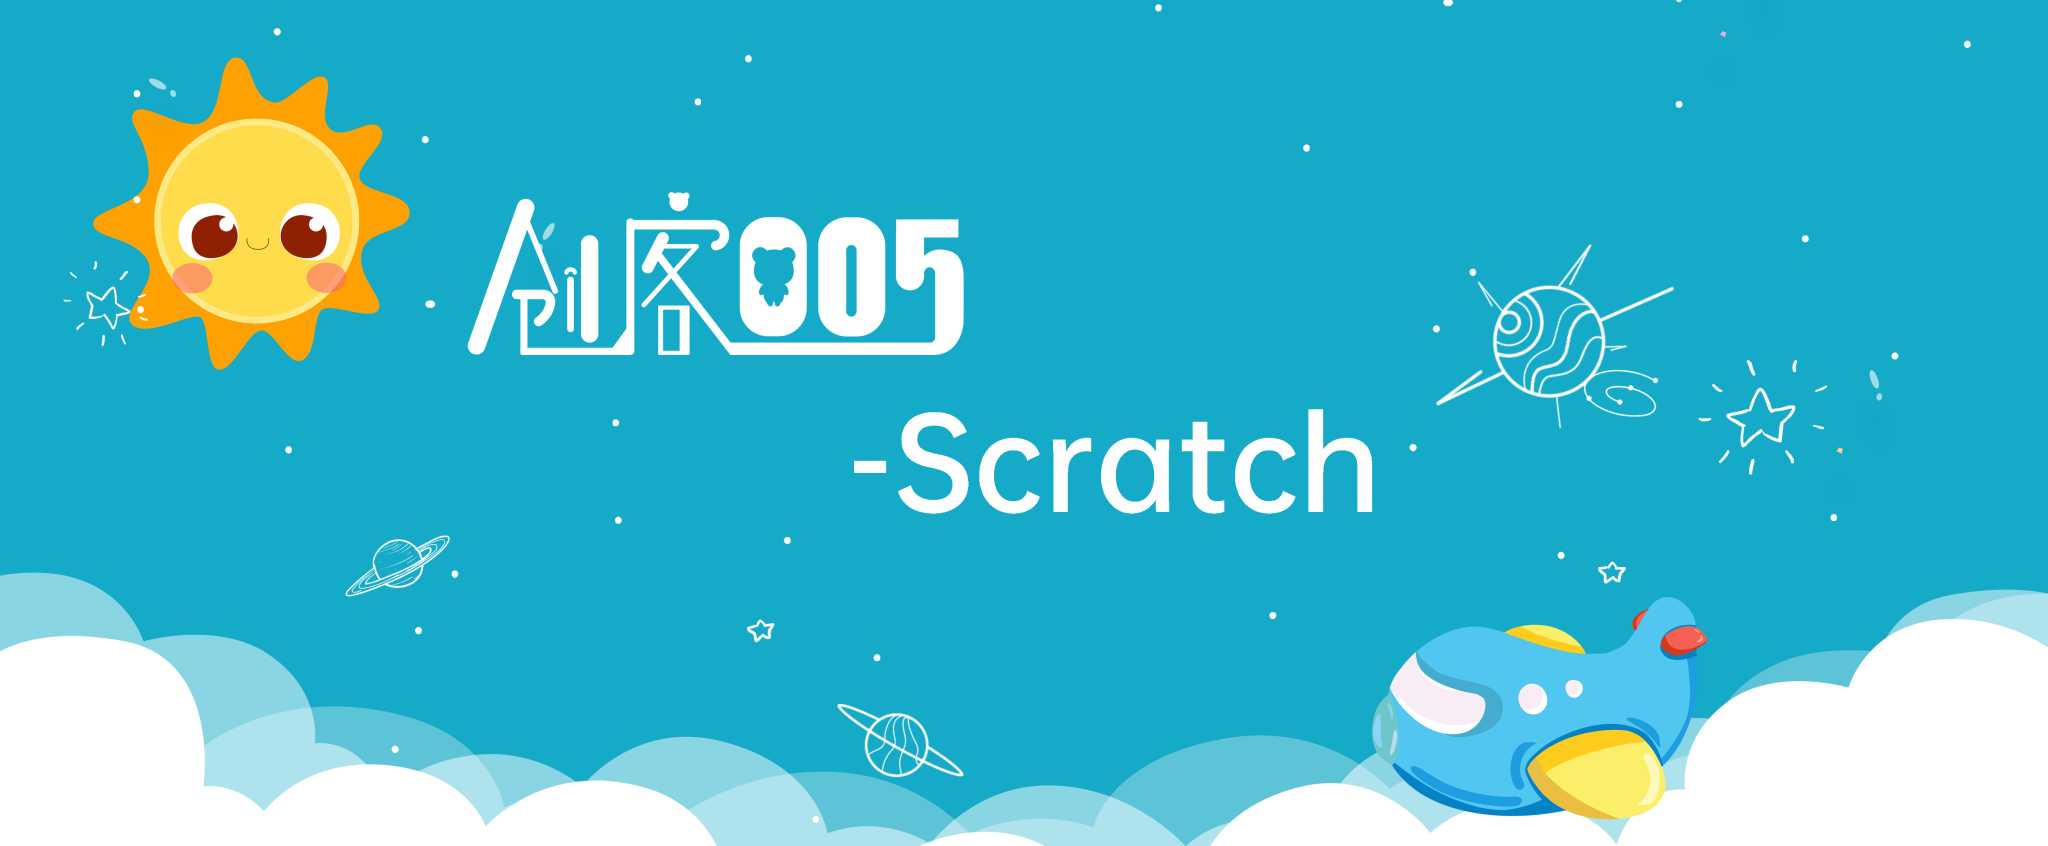 005创客 Scratch趣味编程 | Python编程 | 青少年机器人创客教育